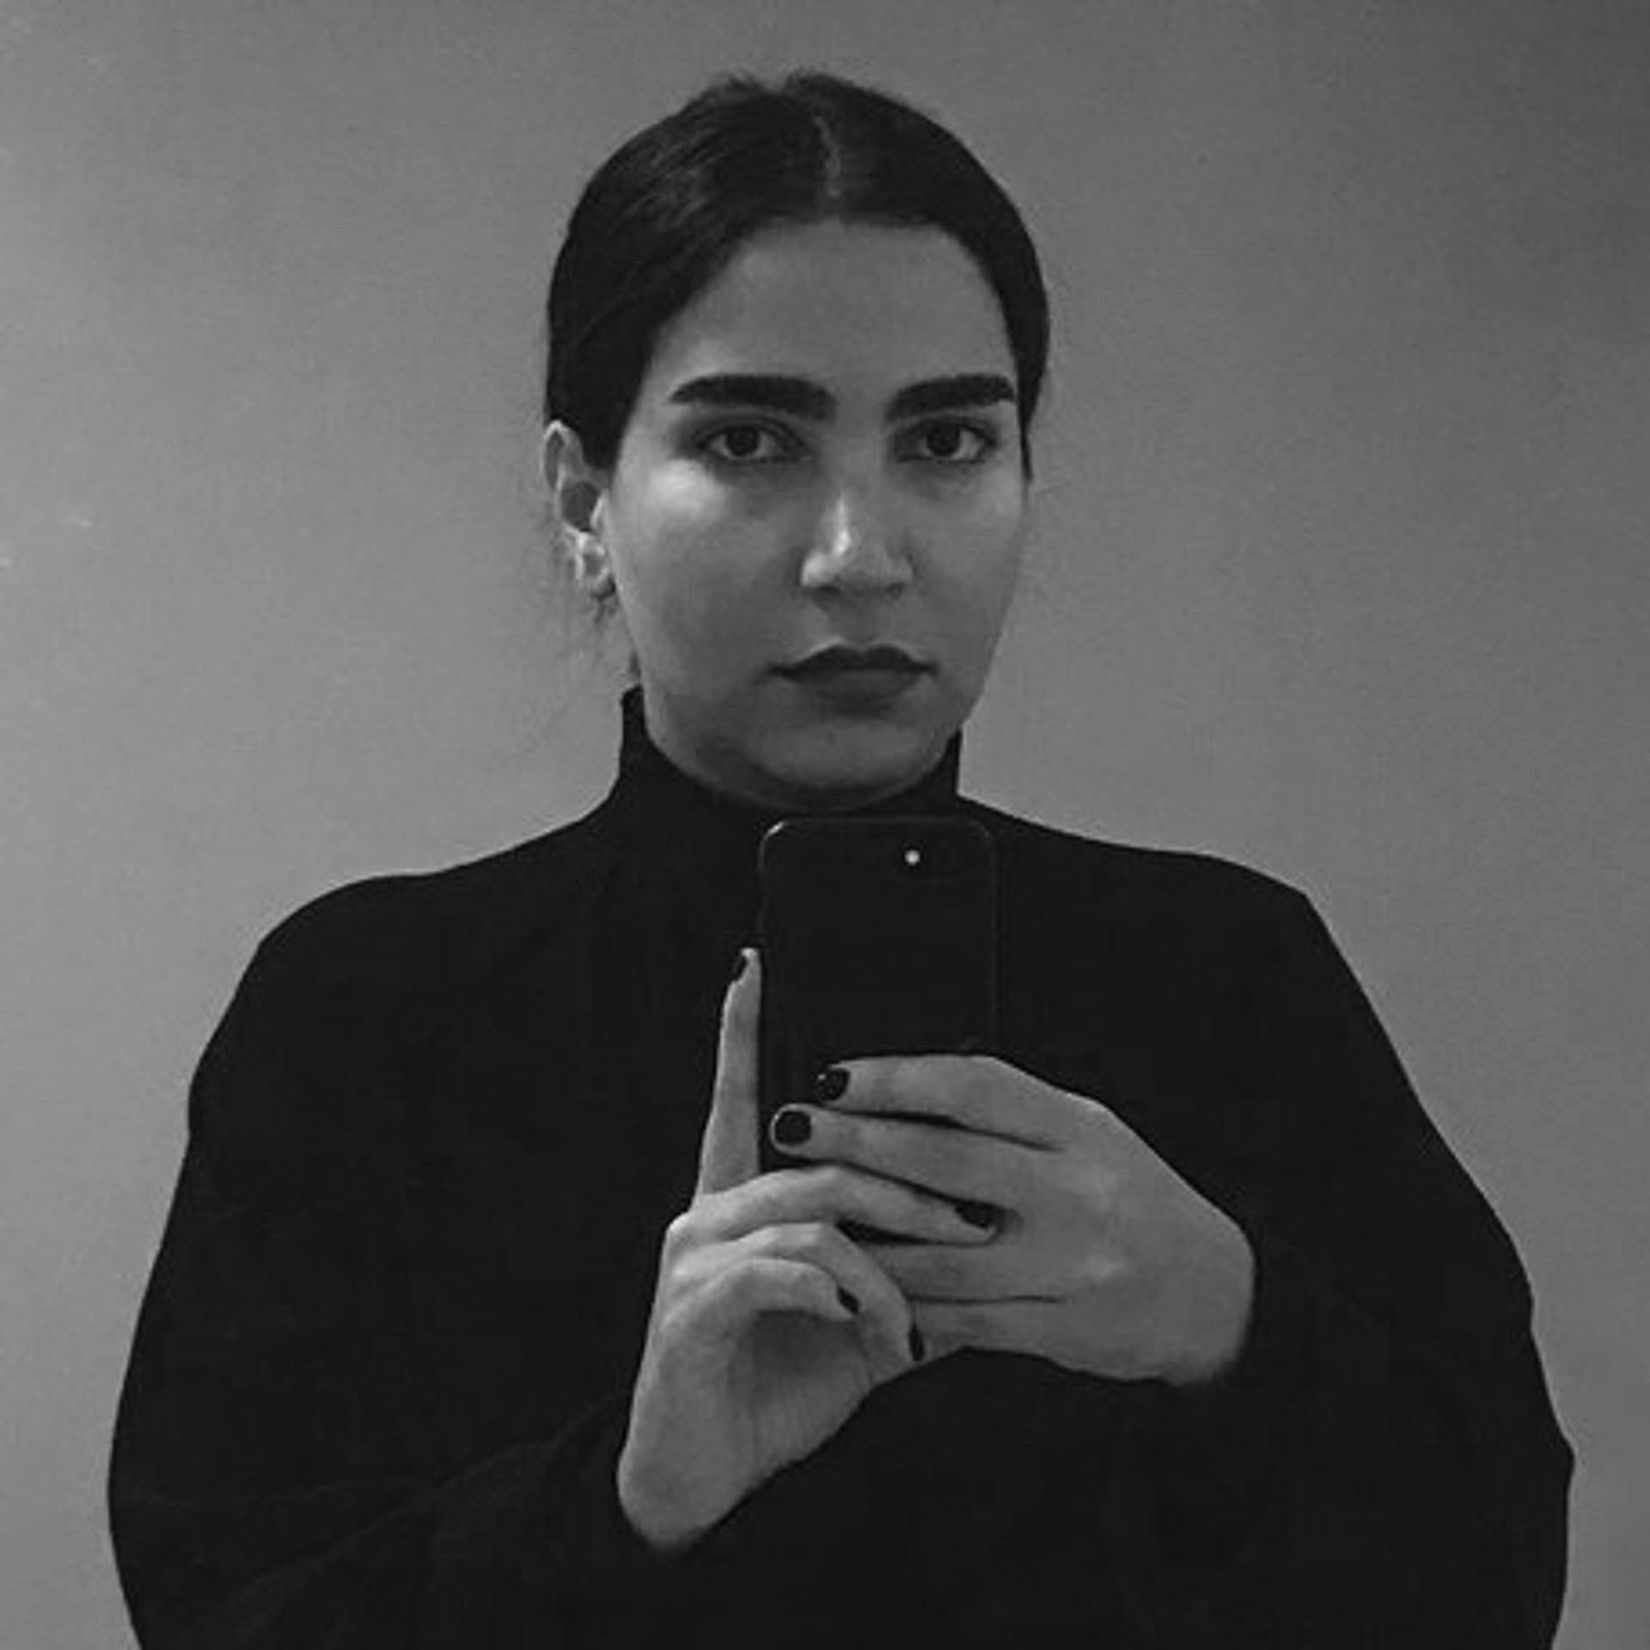 Portrait of Bahar Noorizadeh.